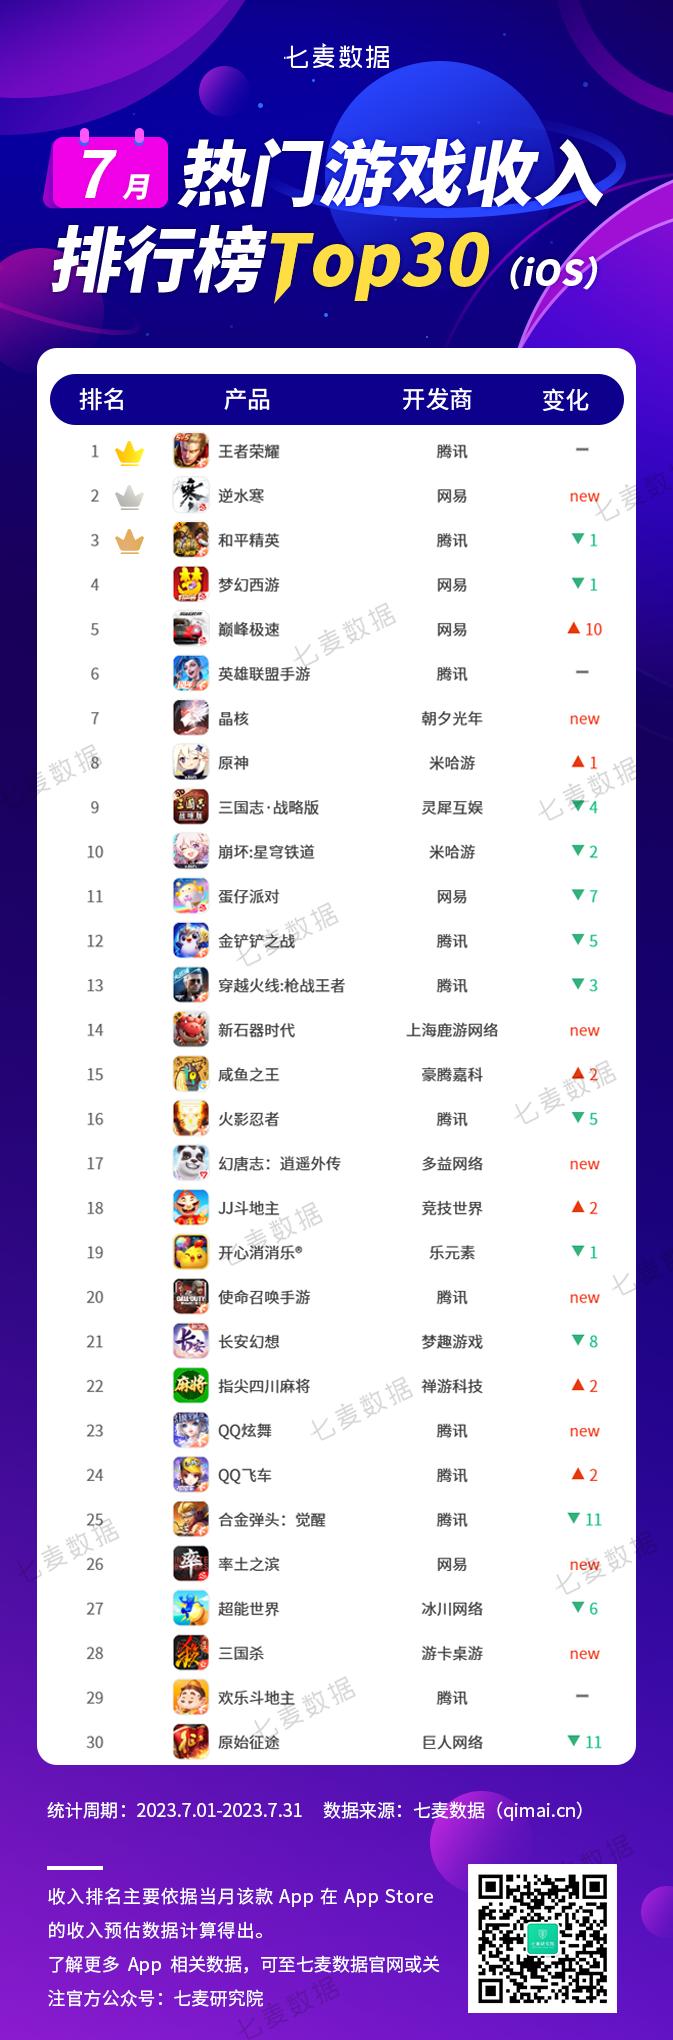 七麦研究院：网易(09999)旗下“蛋仔派对”位居7月热门游戏下载榜Top30榜首